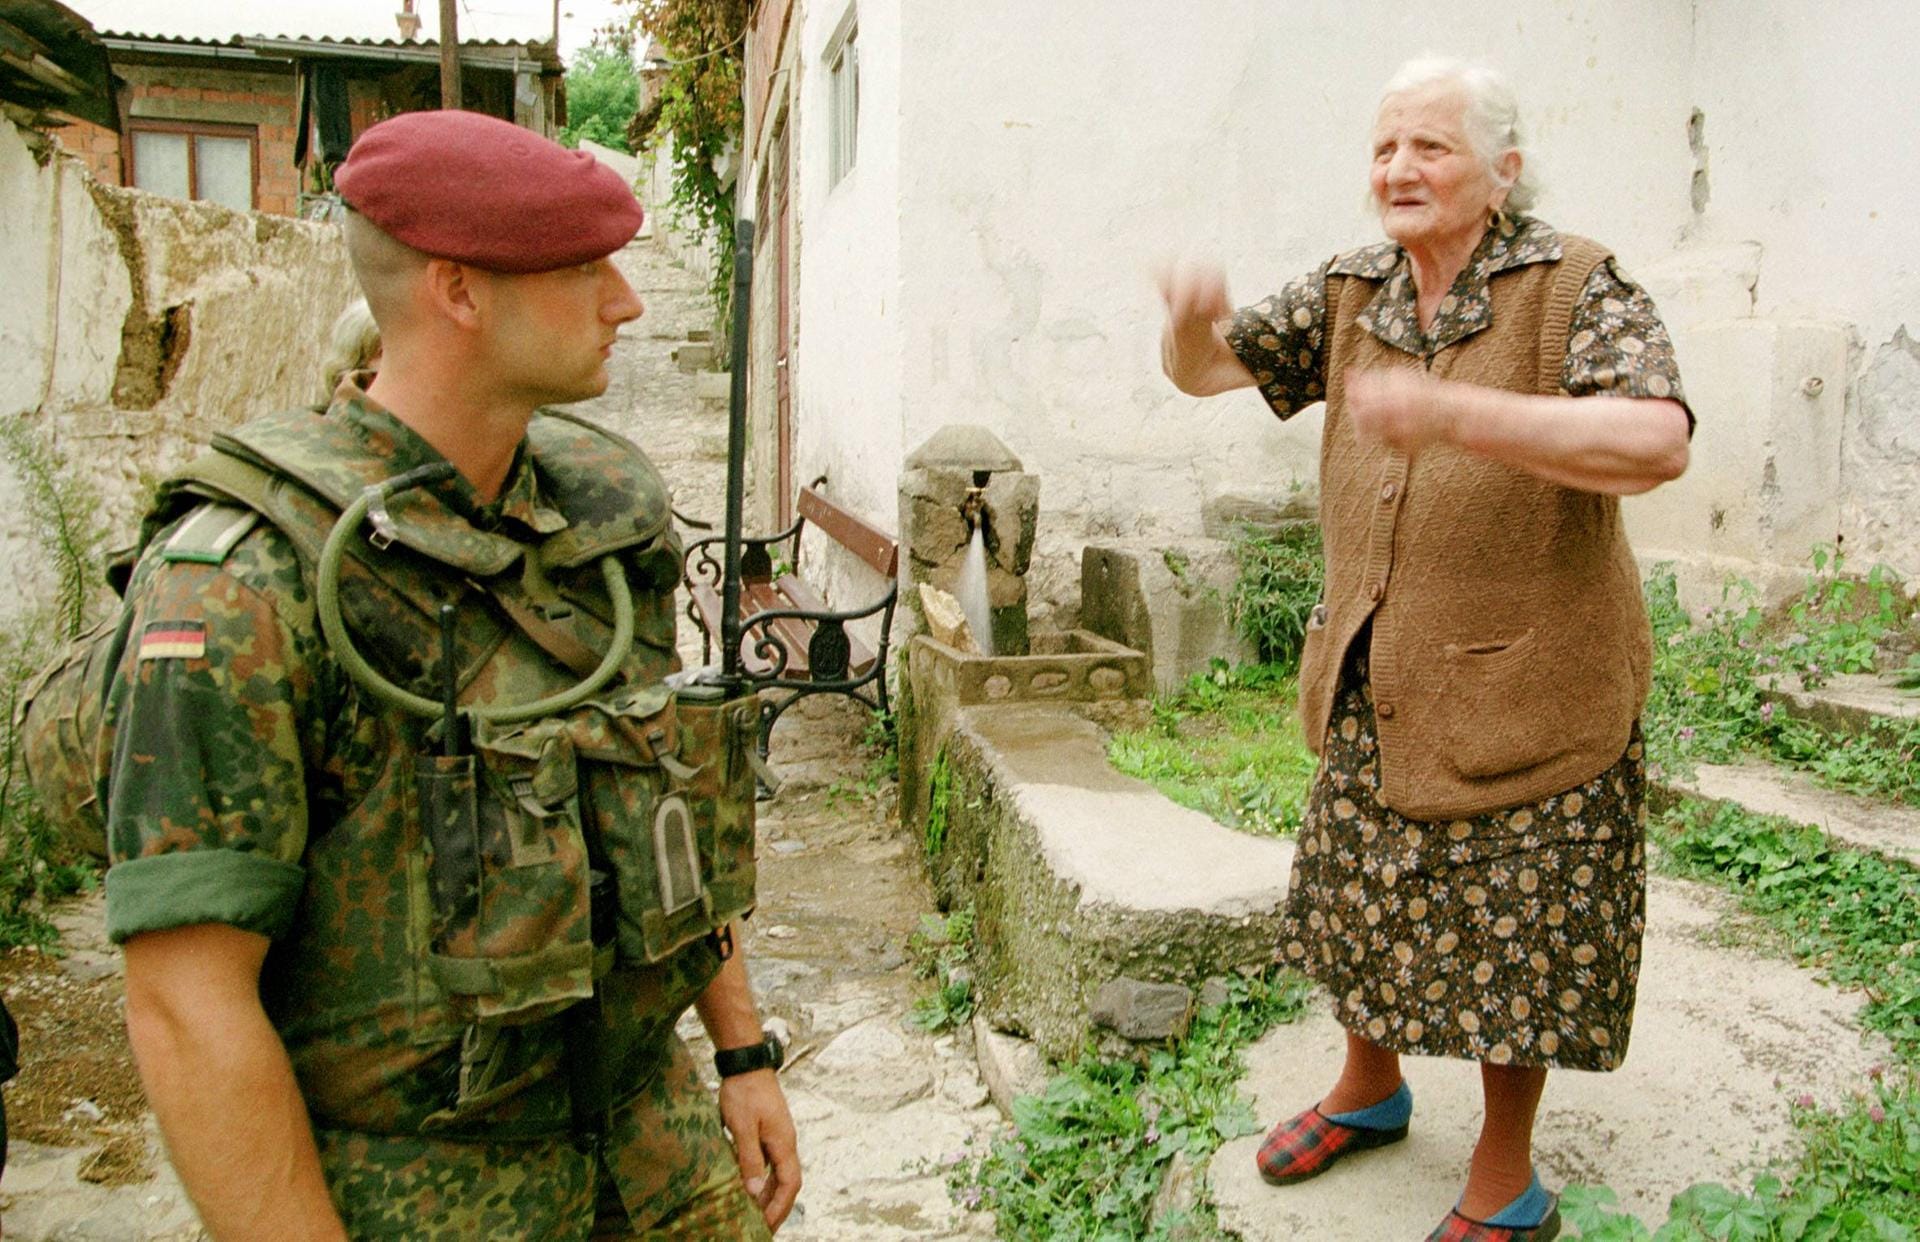 Deutsche KFOR-Soldaten (Fallschirmjäger) patroullieren in Prizren durch einen Stadtteil, in dem vormals hauptsächlich Kosovo-Serben gewohnt haben.